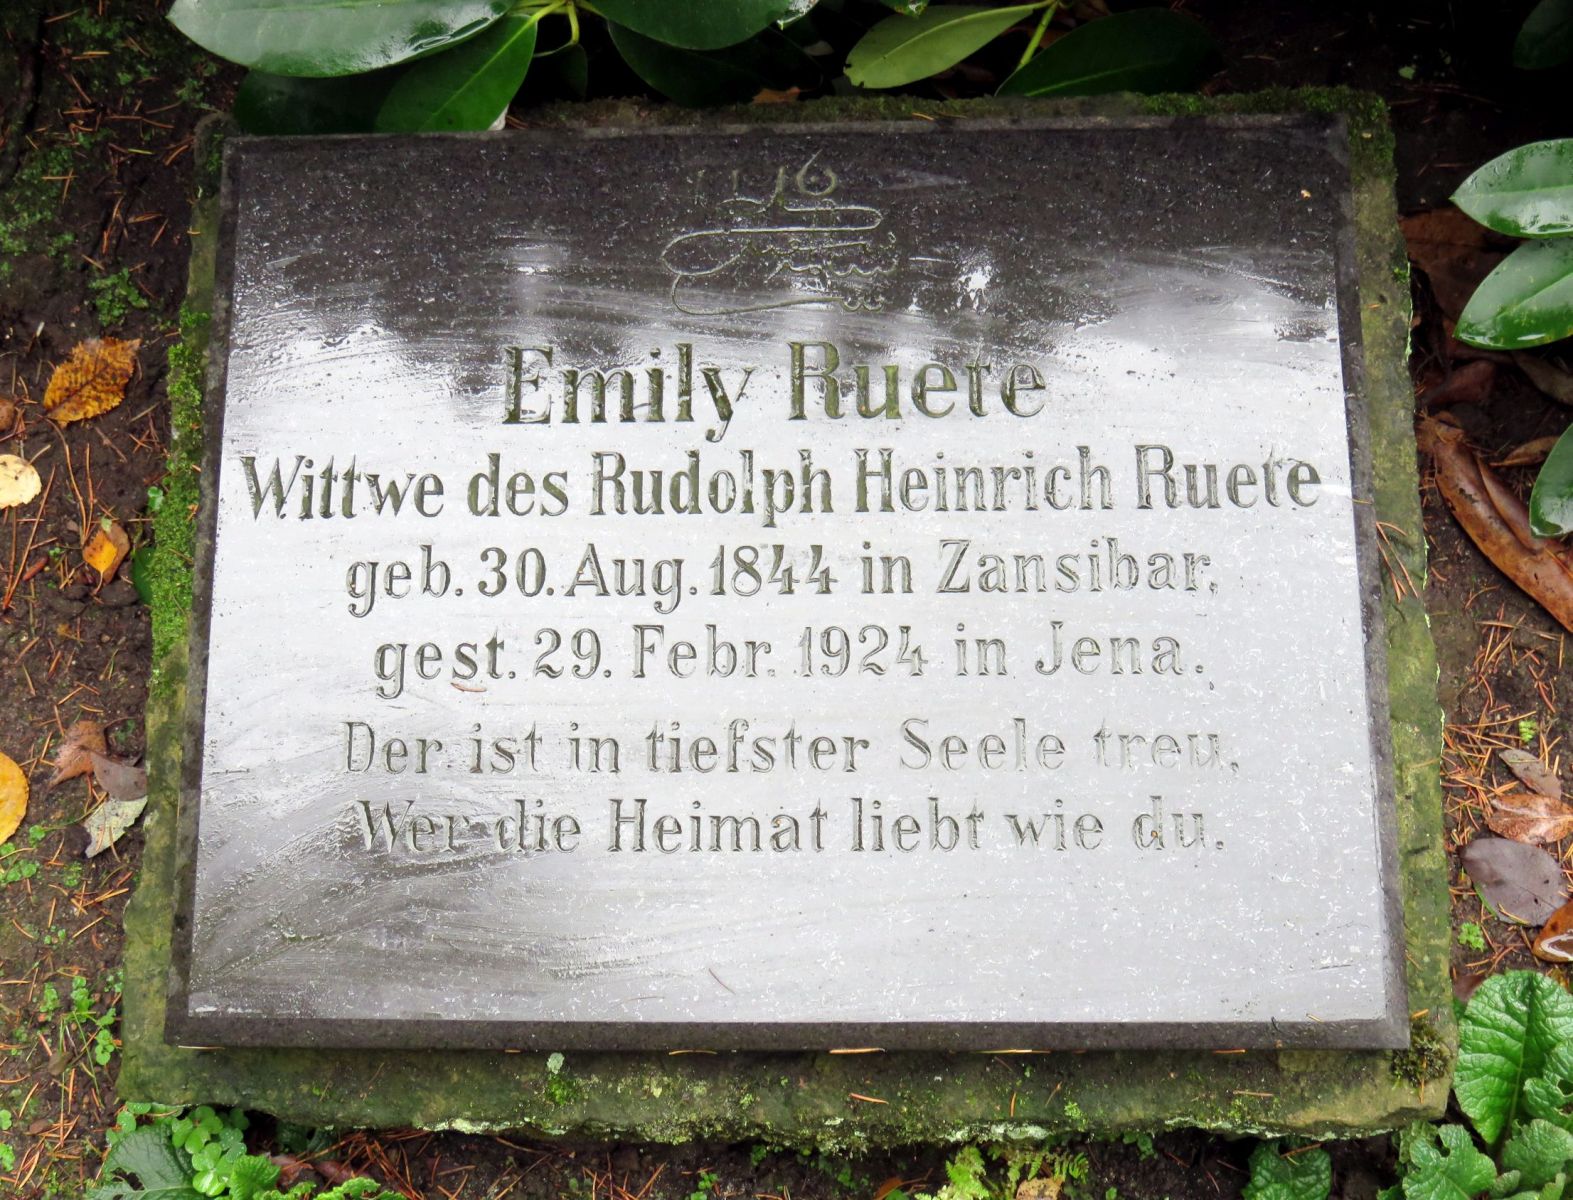 Die Grabanlage der Familie Ruete und der Kissenstein für Emily Ruete auf dem Ohsldorfer Friedhof. Fotos: Vitavia, 2018, Wikimedia Commons CC BY-SA 4.0.